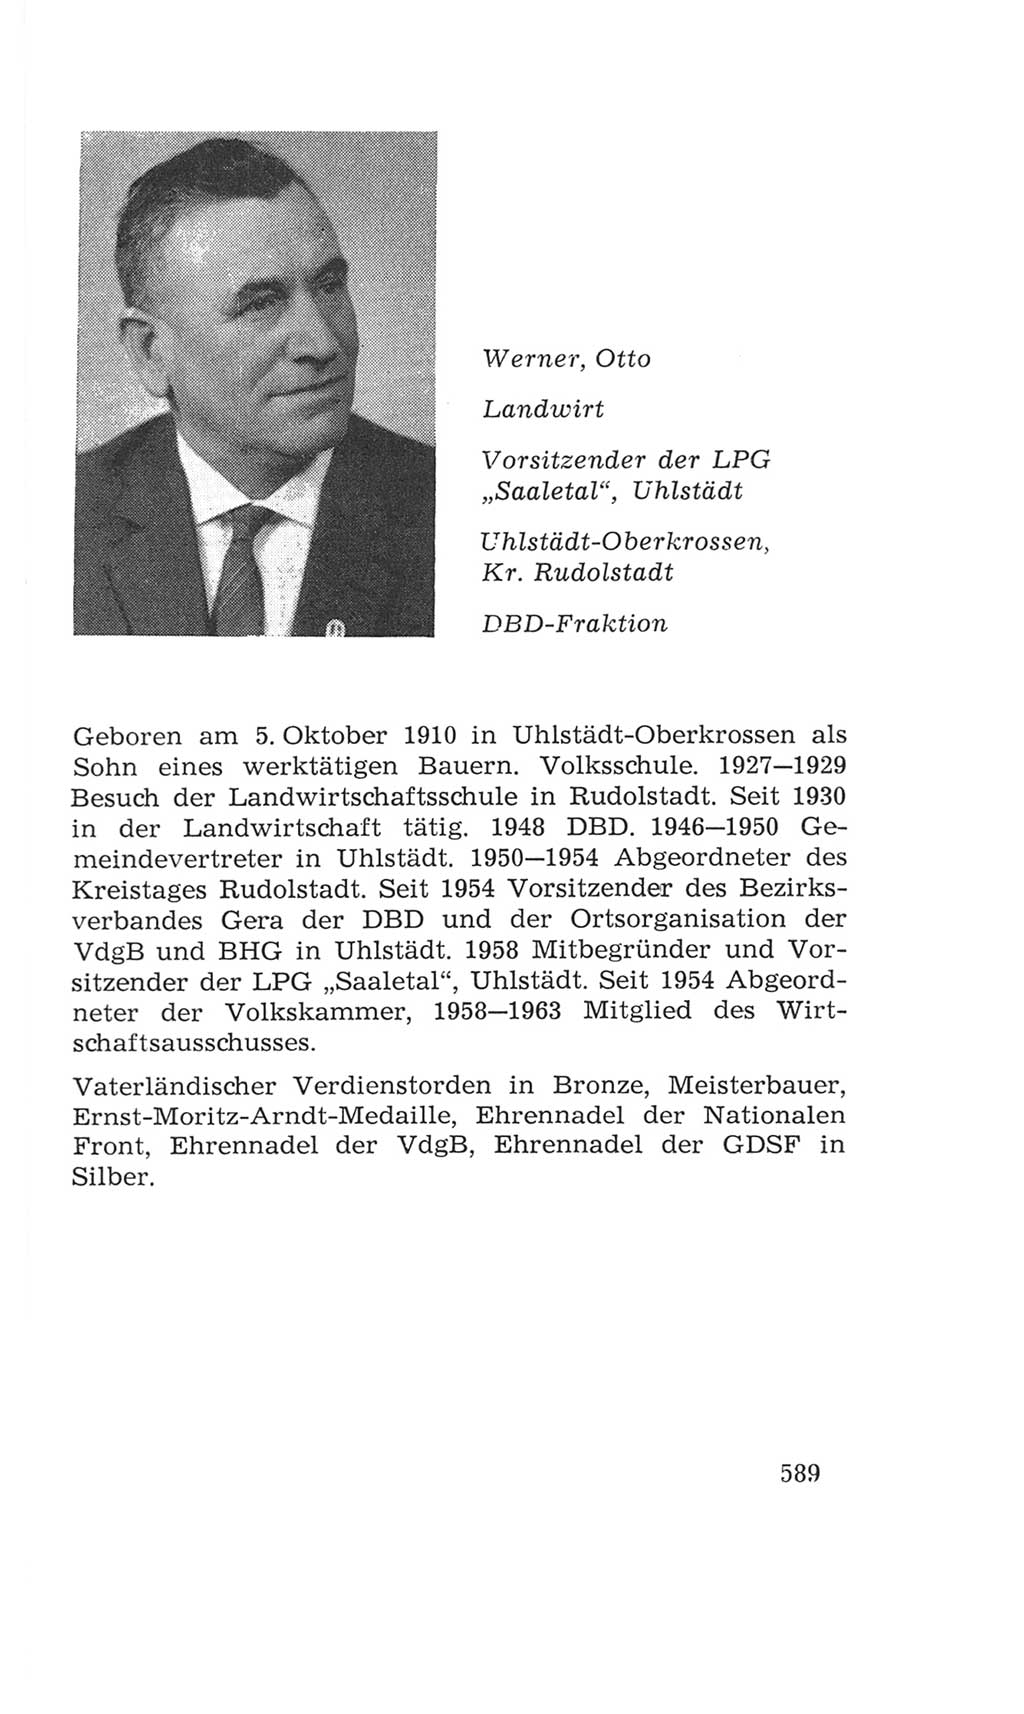 Volkskammer (VK) der Deutschen Demokratischen Republik (DDR), 4. Wahlperiode 1963-1967, Seite 589 (VK. DDR 4. WP. 1963-1967, S. 589)